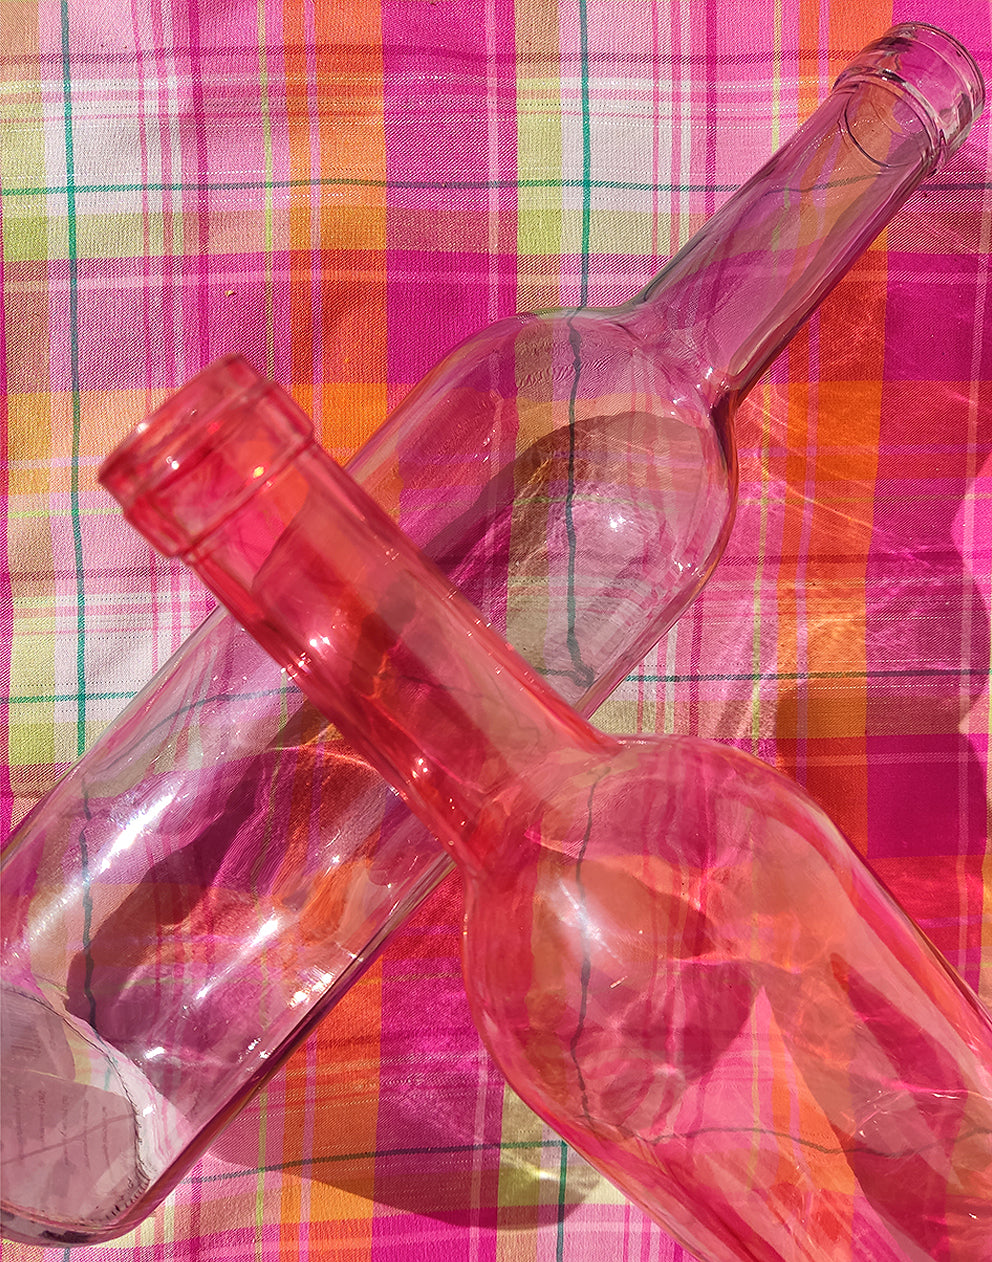 Coloured Glass Bottles Vases in Pastel